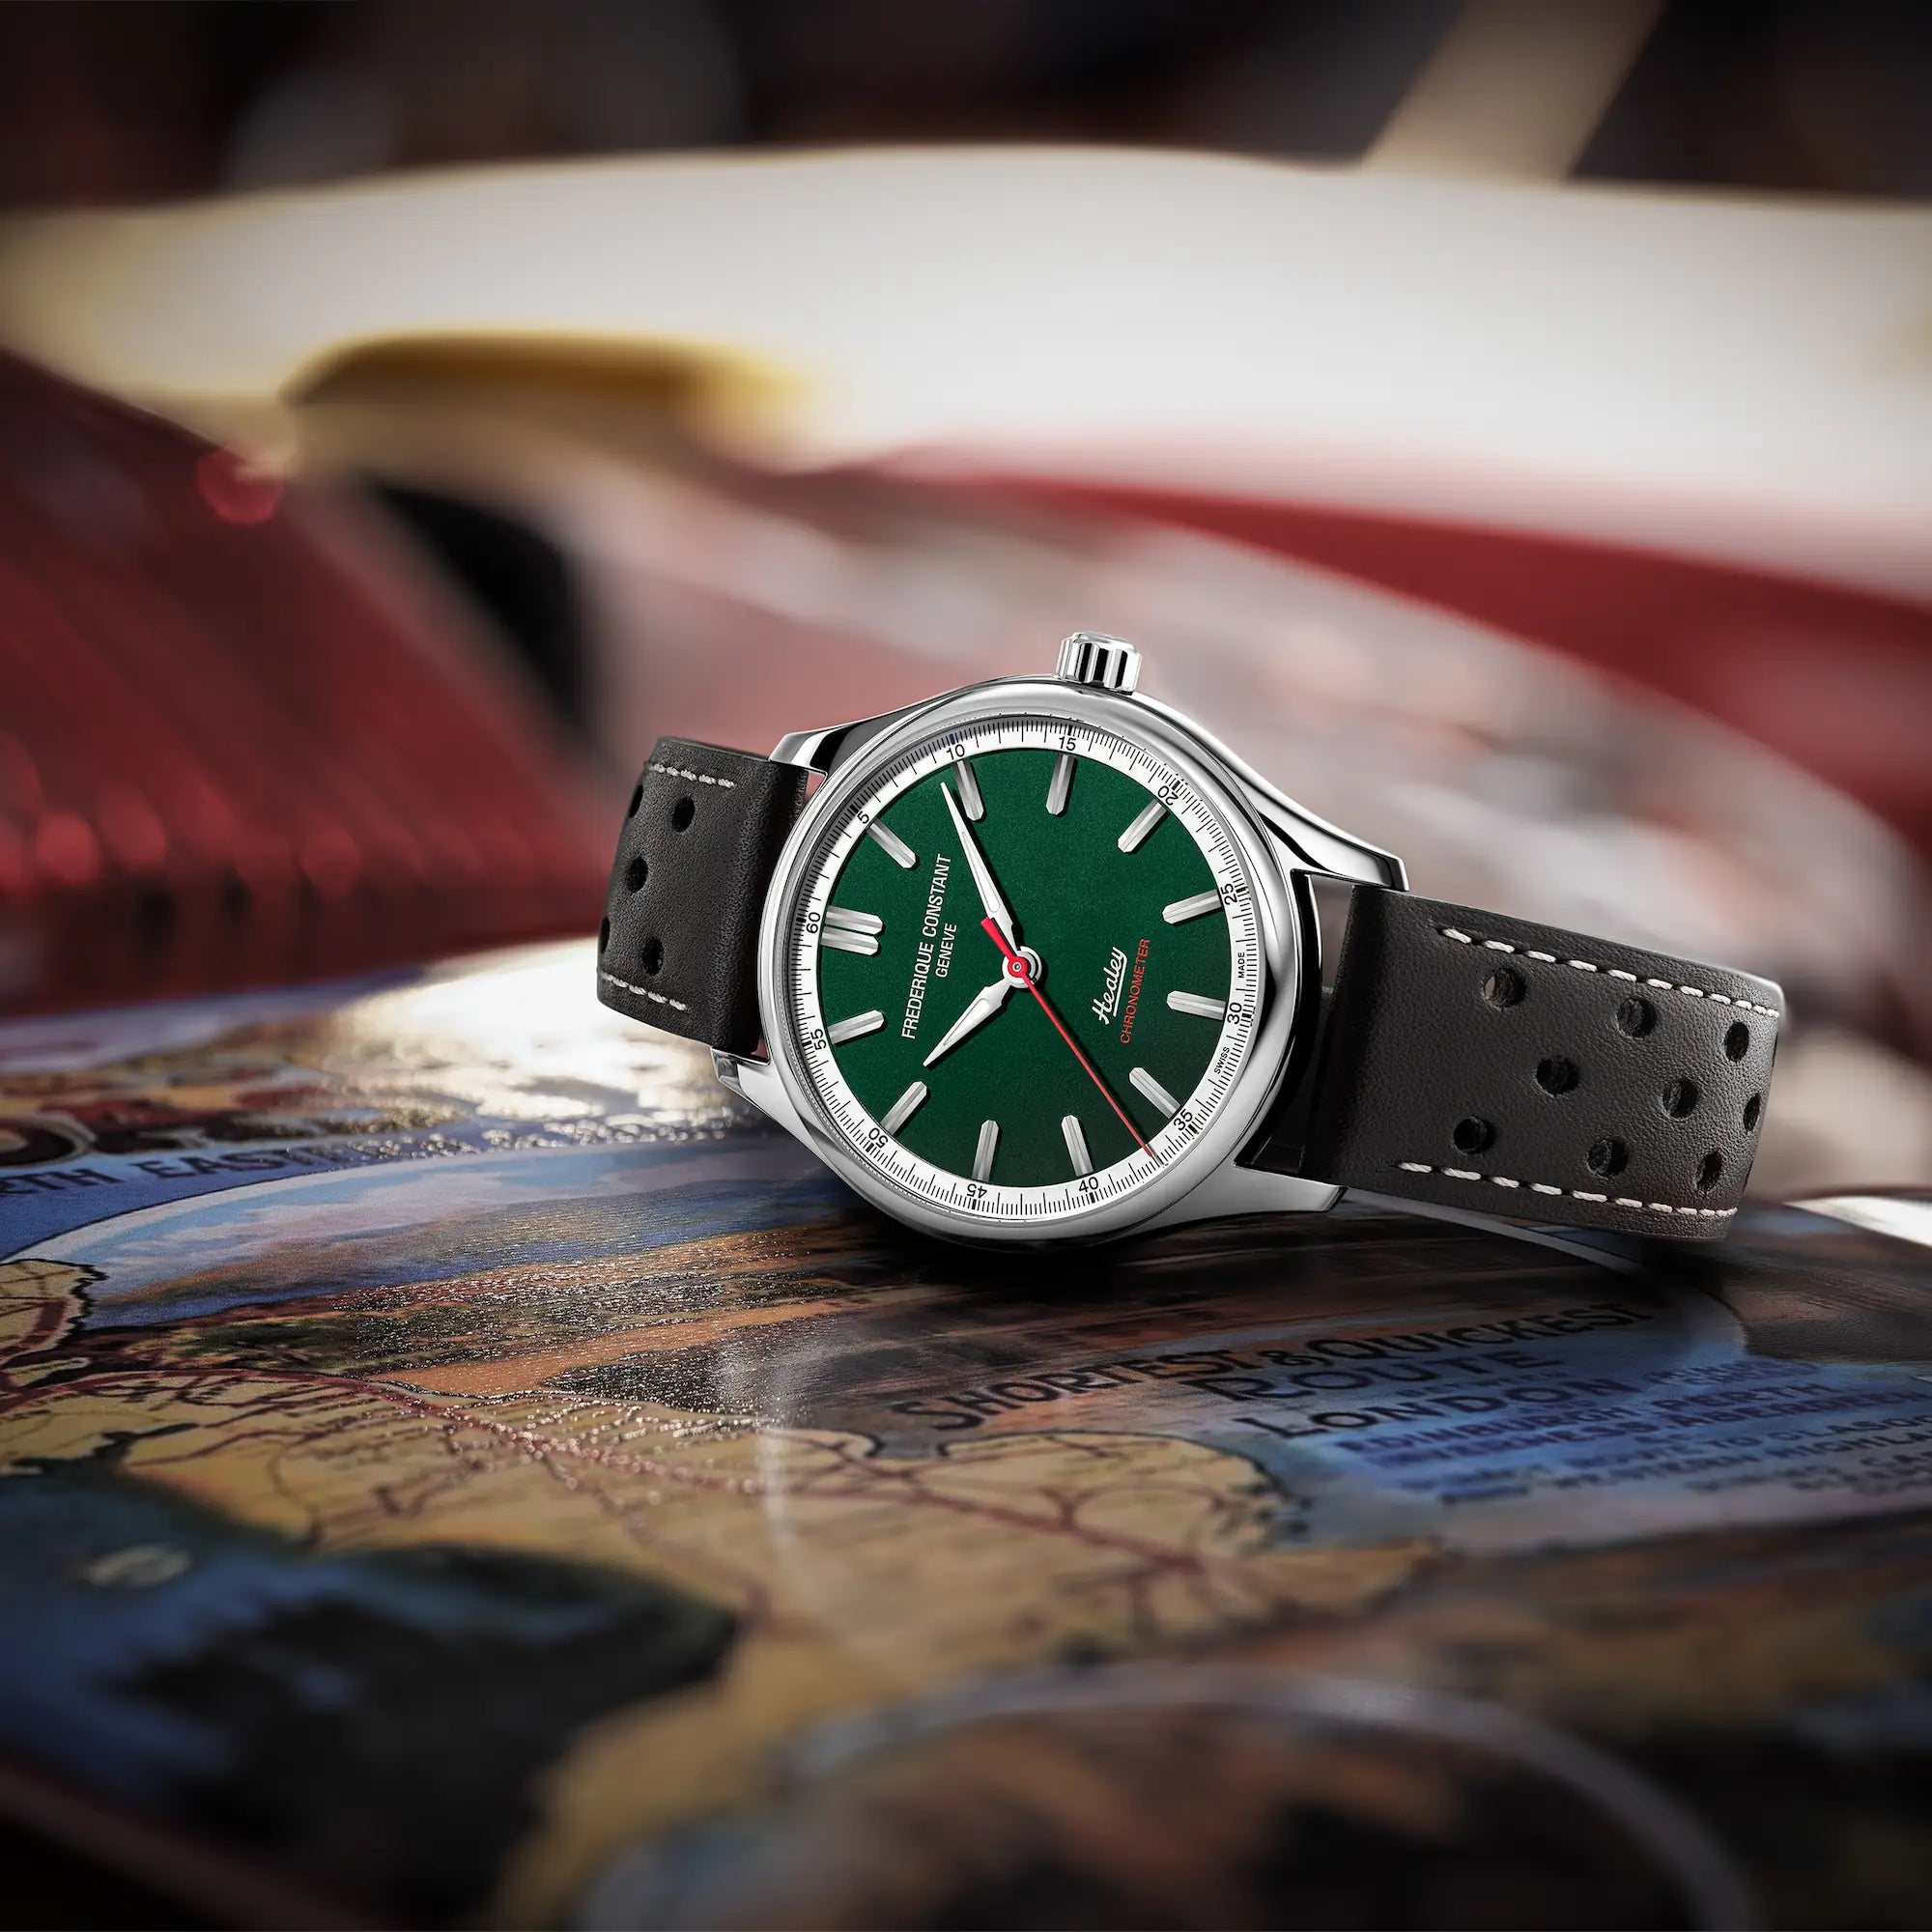 Produktfotografie der "Vintage Rally Healey" Uhr von Frederique Constant aus der Classics Kollektion mit einem dunkelgrünem Zifferblatt und einem braunen Lederarmband im Racing-Look, während die Uhr auf einem Buch mit einer Karte liegt